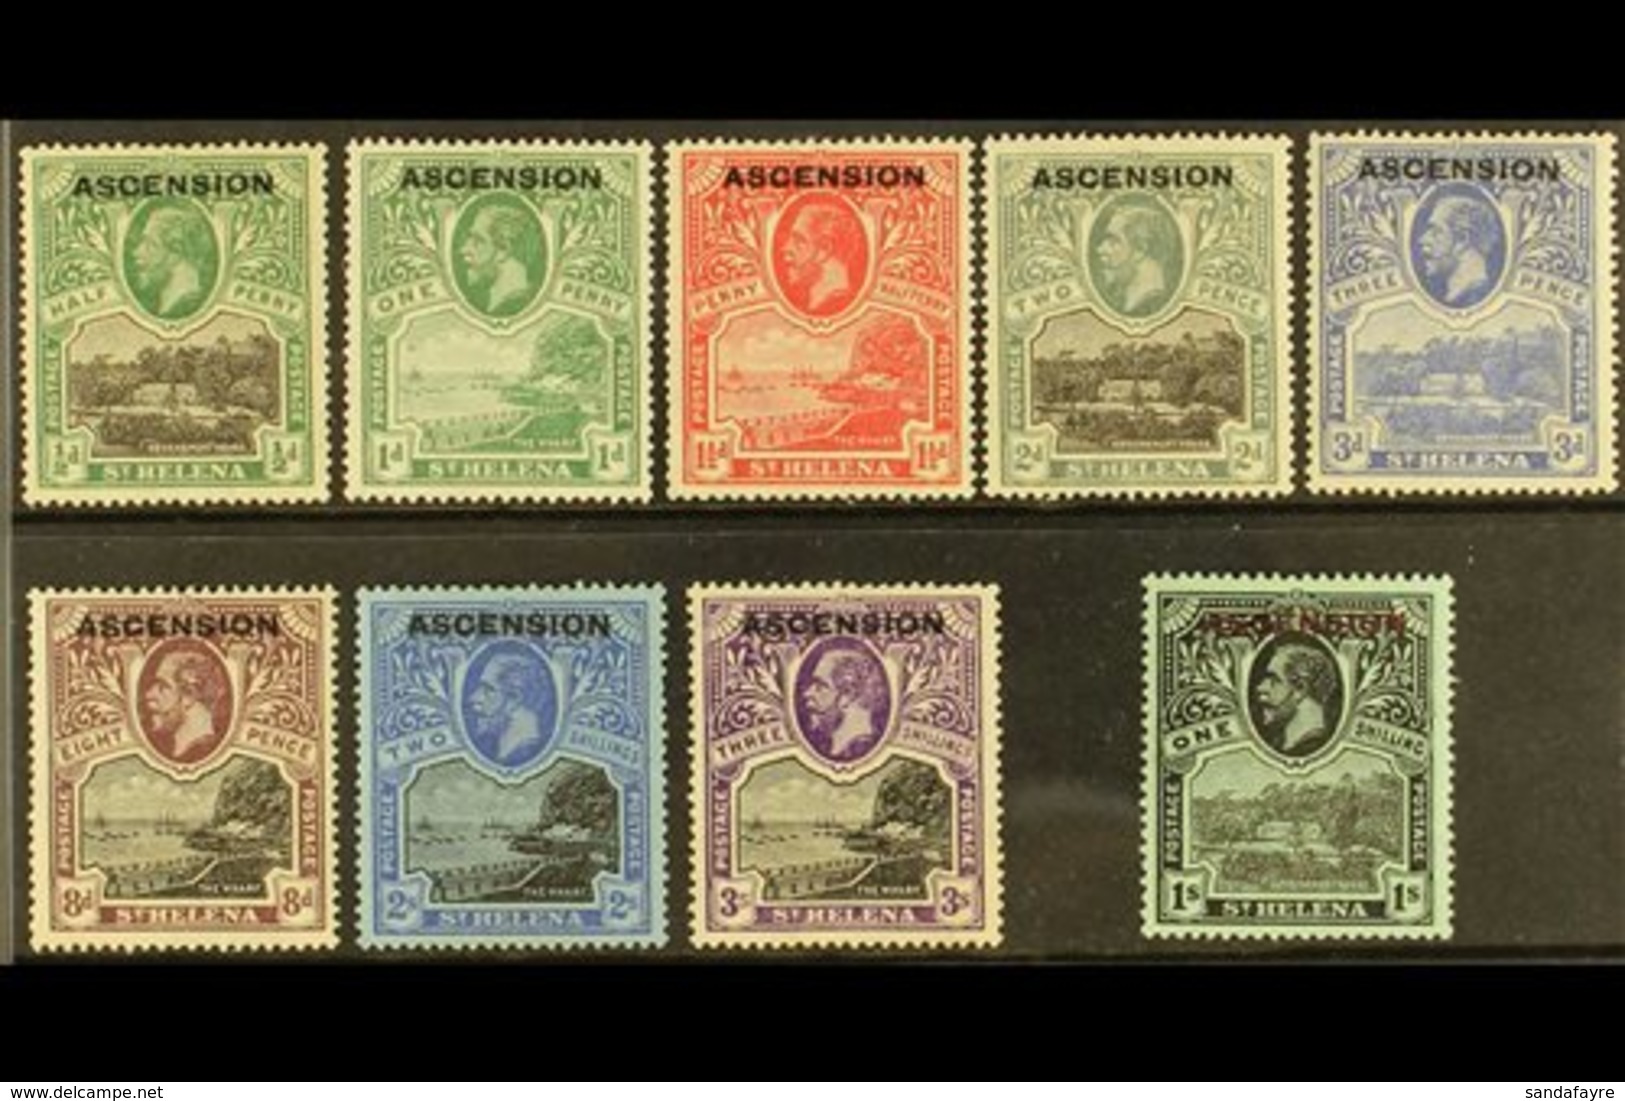 1922 KGV St Helena Opt'd Set, SG 1/9, Fine Mint (9 Stamps) For More Images, Please Visit Http://www.sandafayre.com/itemd - Ascension